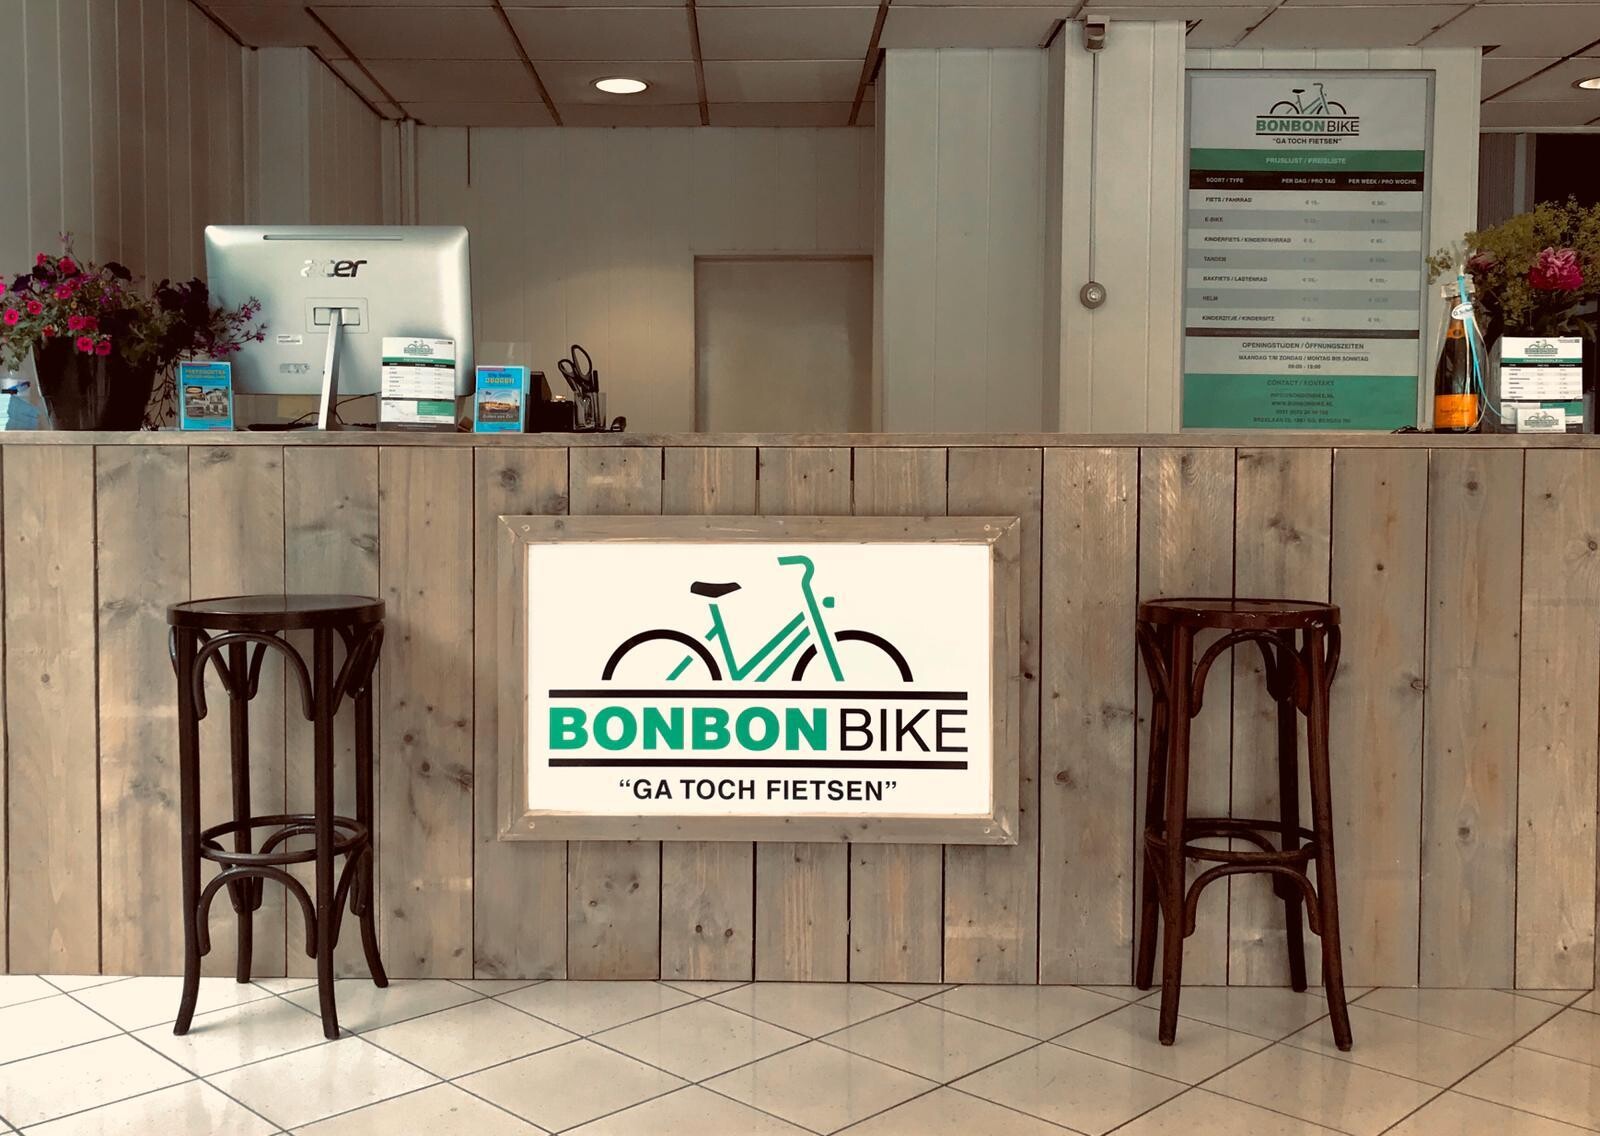 About Bon Bon Bike